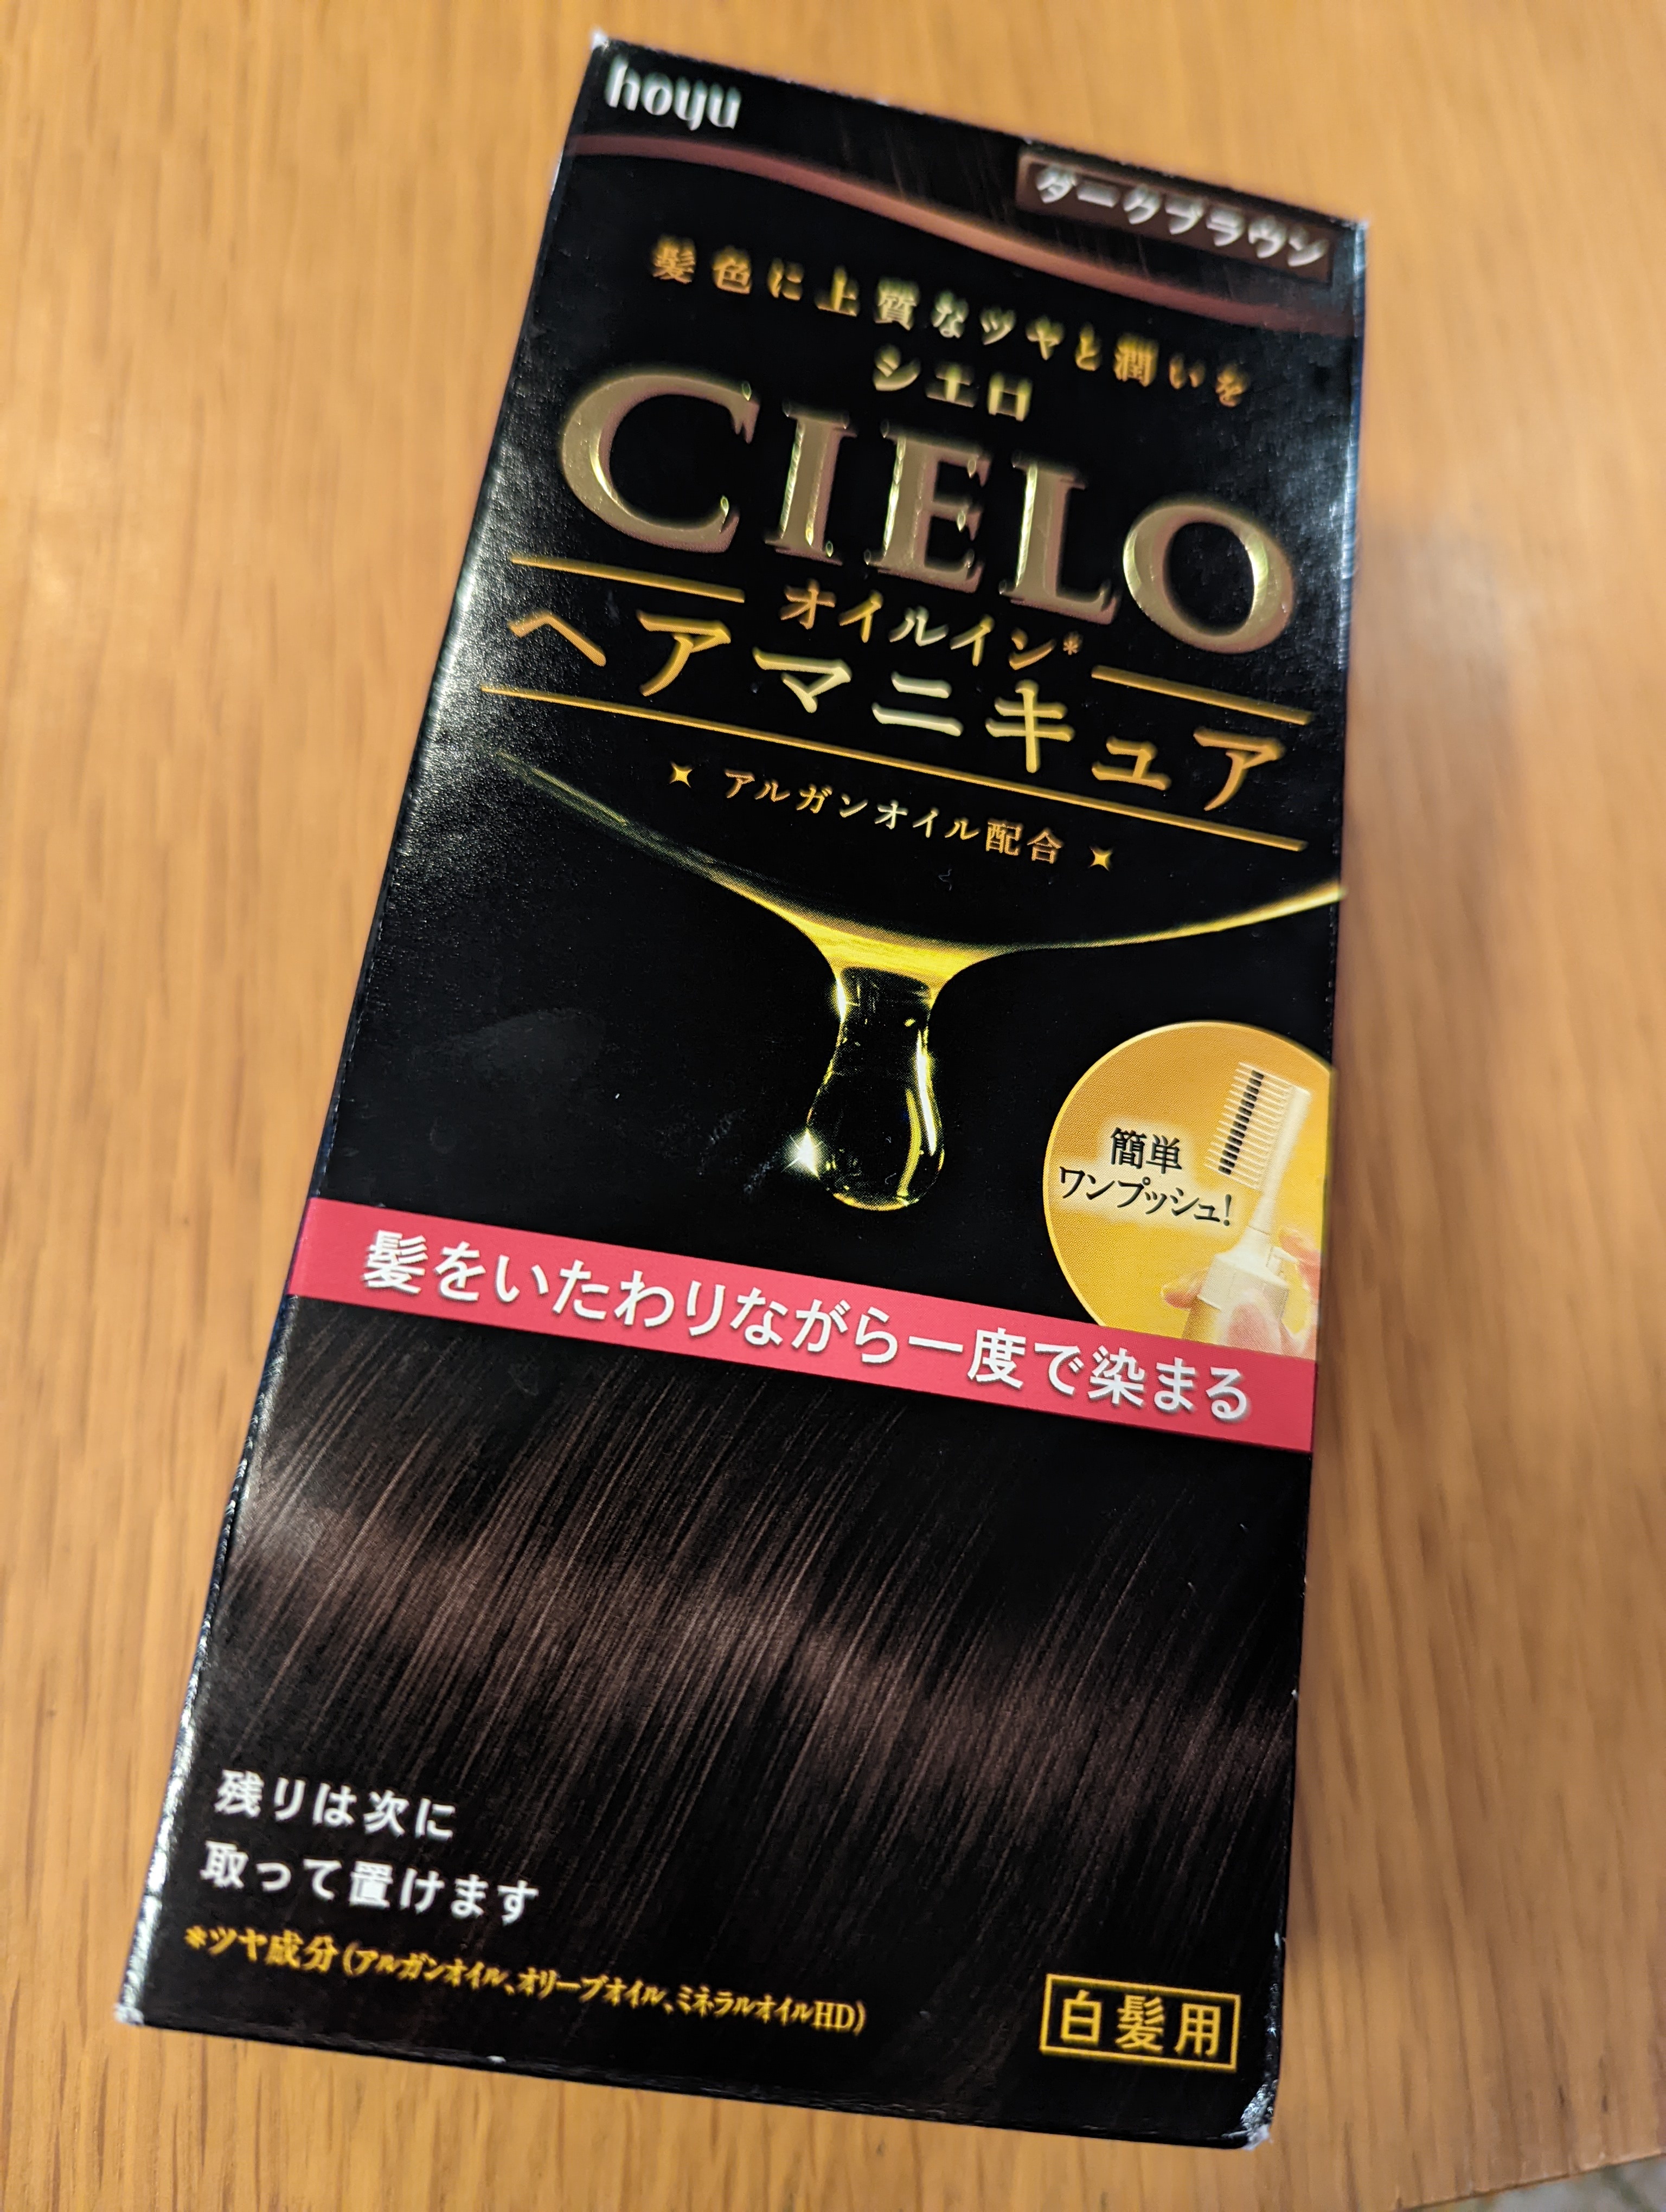 シエロ / オイルインヘアマニキュア ウォームブラウンの公式商品画像 